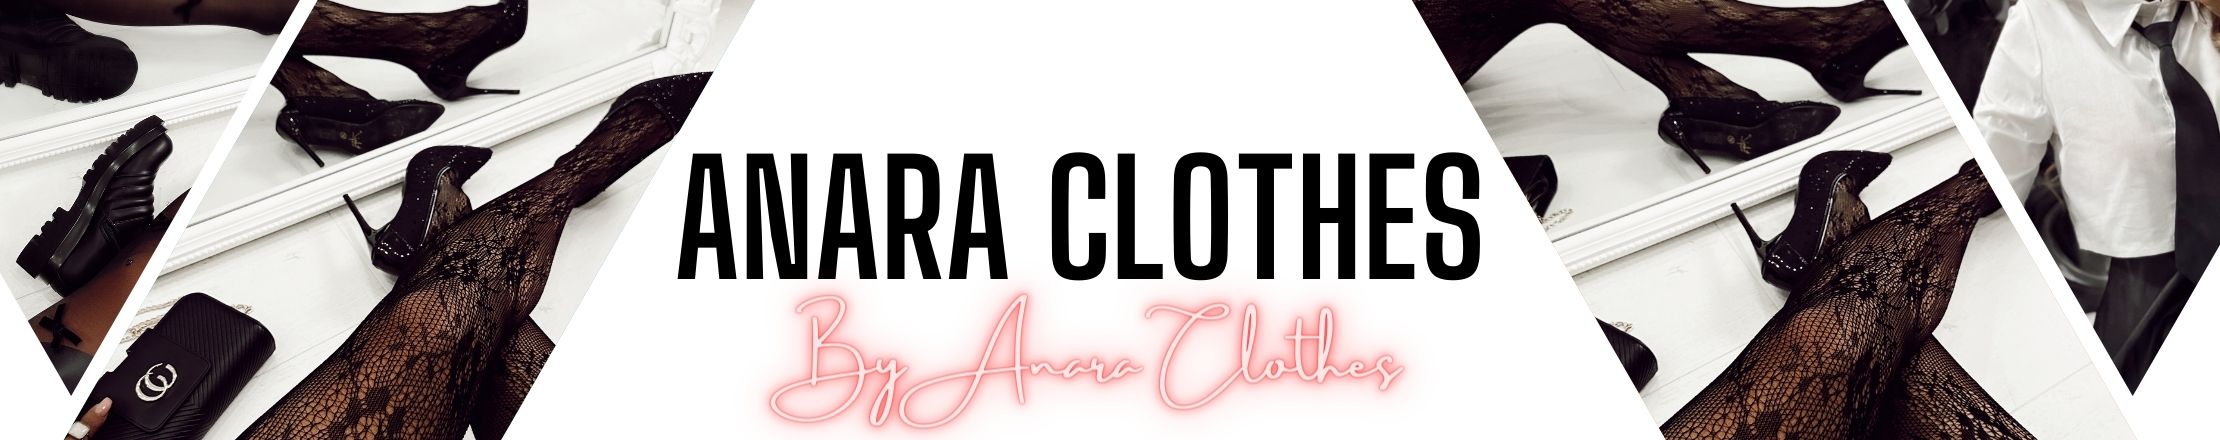 Anara clothes site en ligne de vêtements, chaussures & accessoires